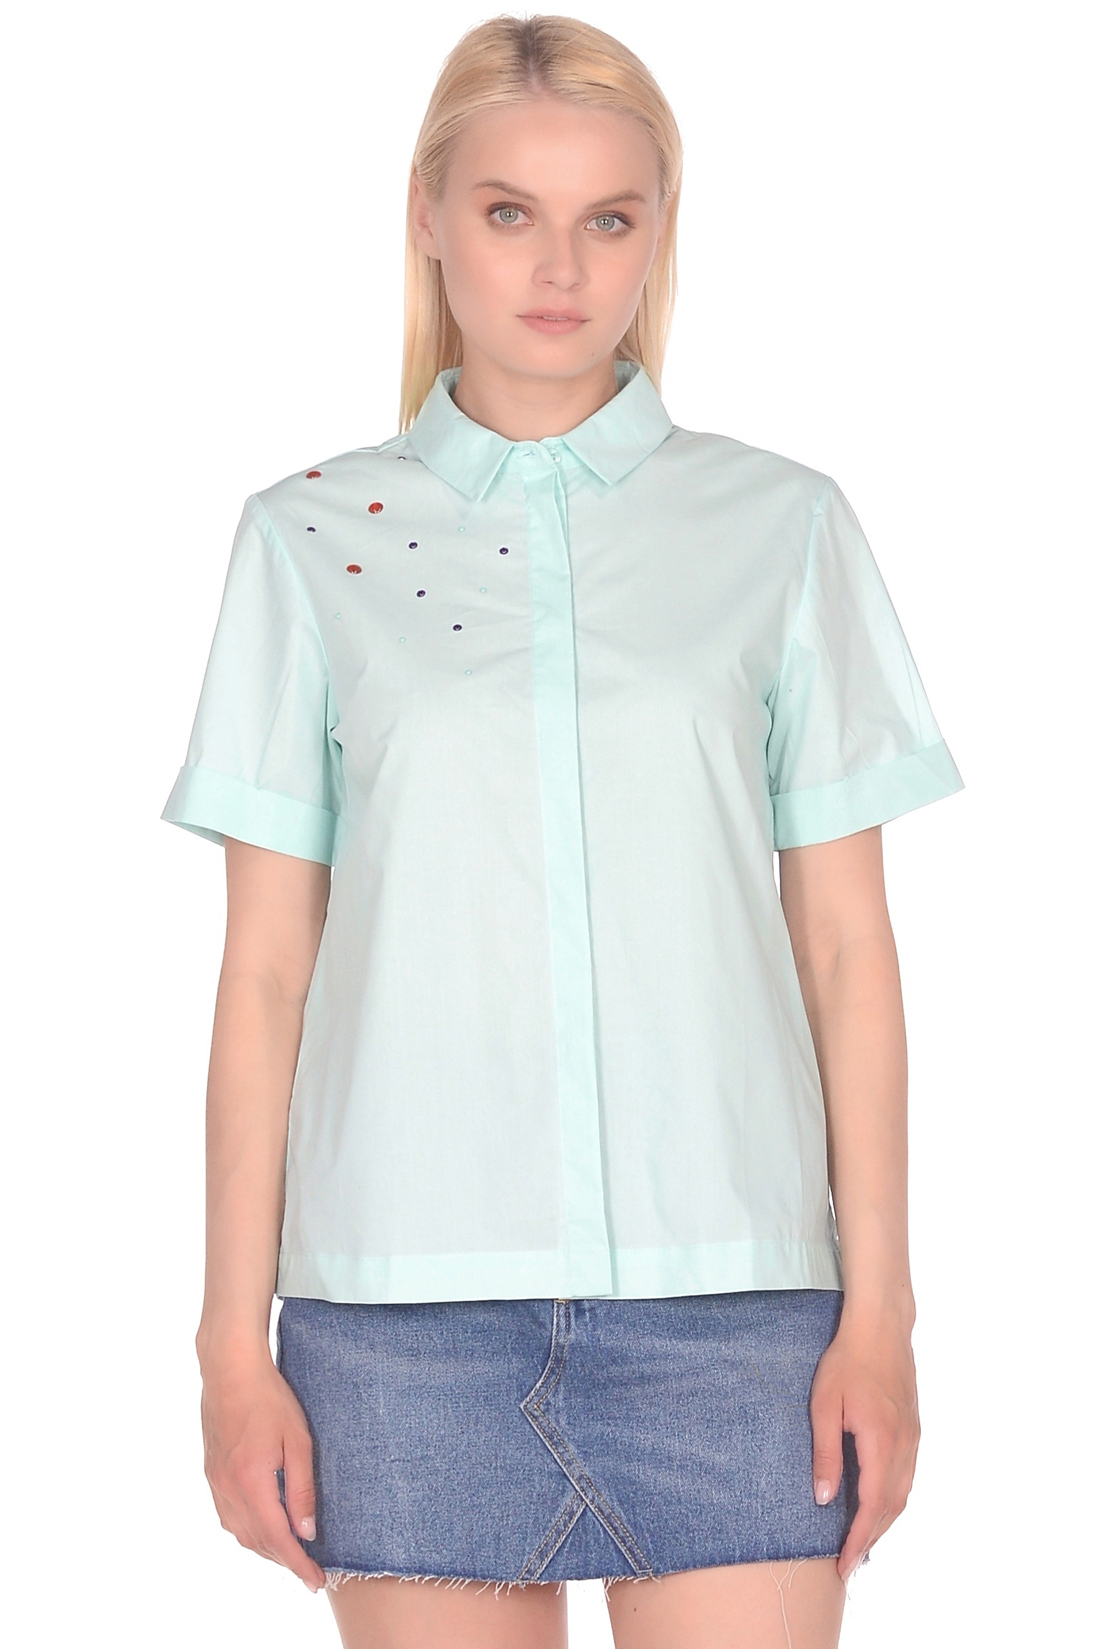 Рубашка женская Baon B199029 голубая L